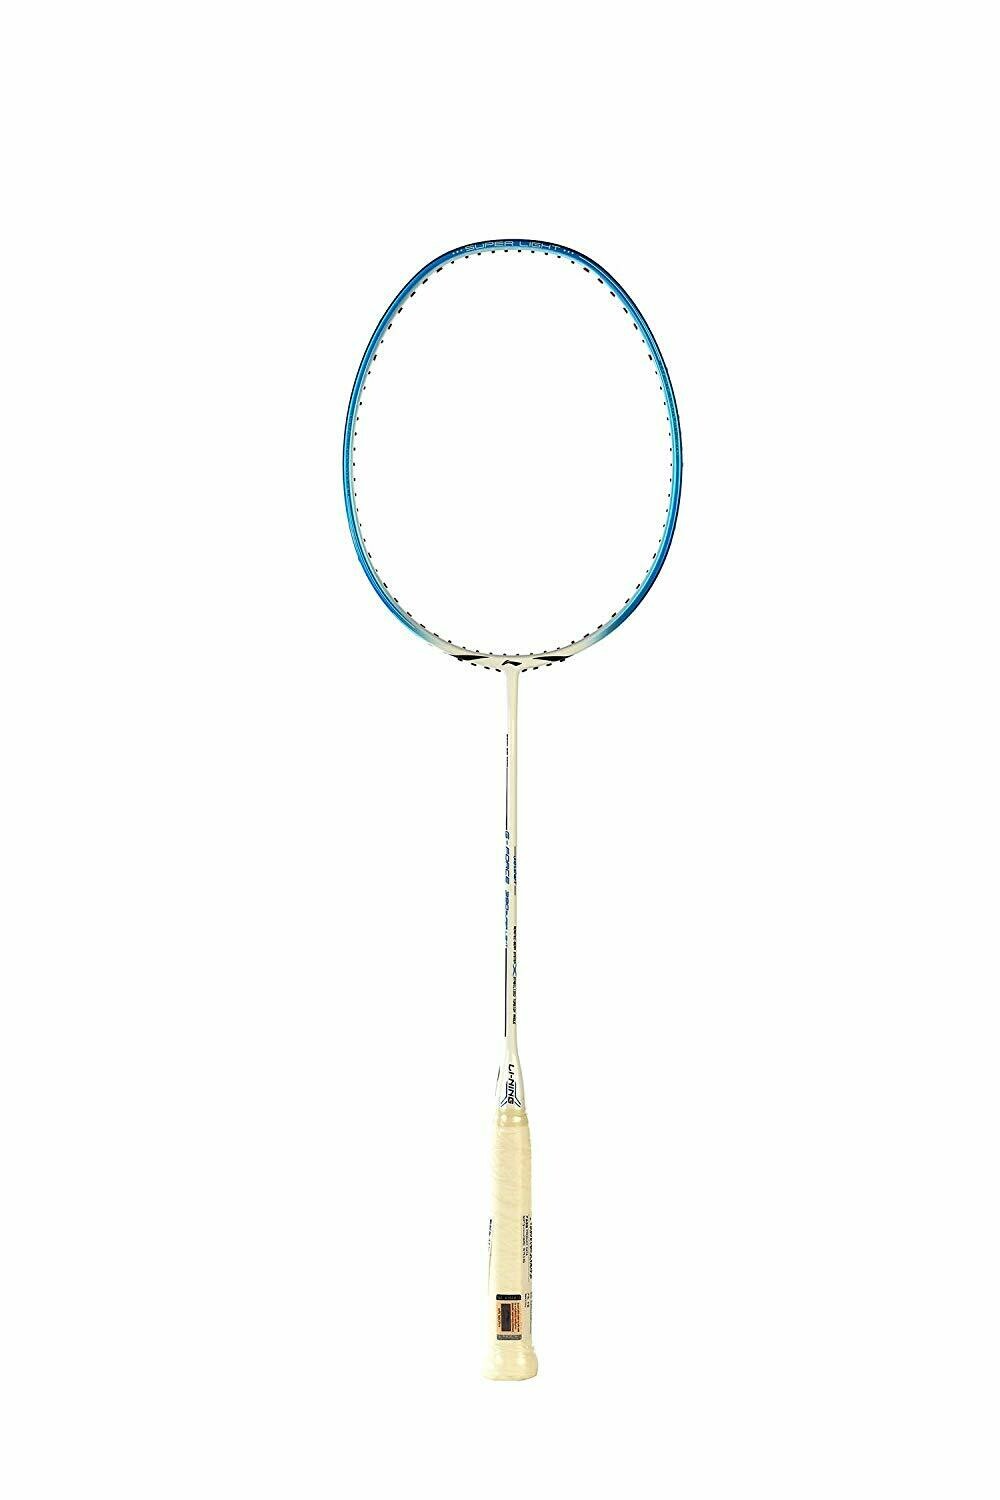 LI-NING 390 Super Light G-Force Carbon Fiber Badminton Racquet, Size S2 (White/Blue)